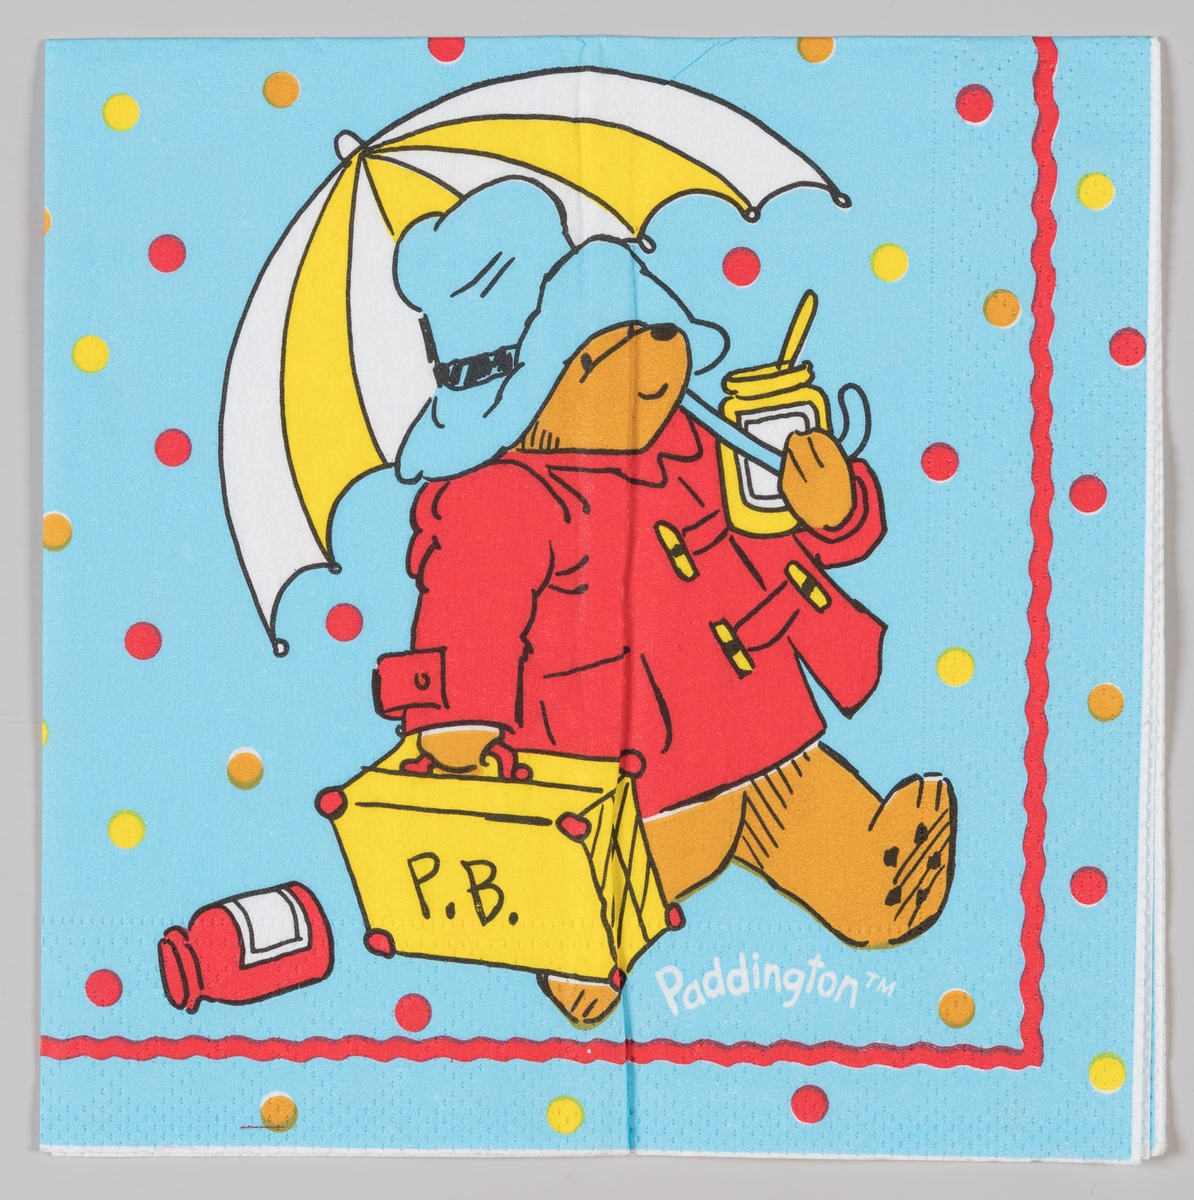 Bjørnen Paddington med frakk, hatt, paraply og koffert.

Bjørnen Paddington er hovedperson i en rekke barnebøker av forfatteren Michael Bond som utkom fra 1958.